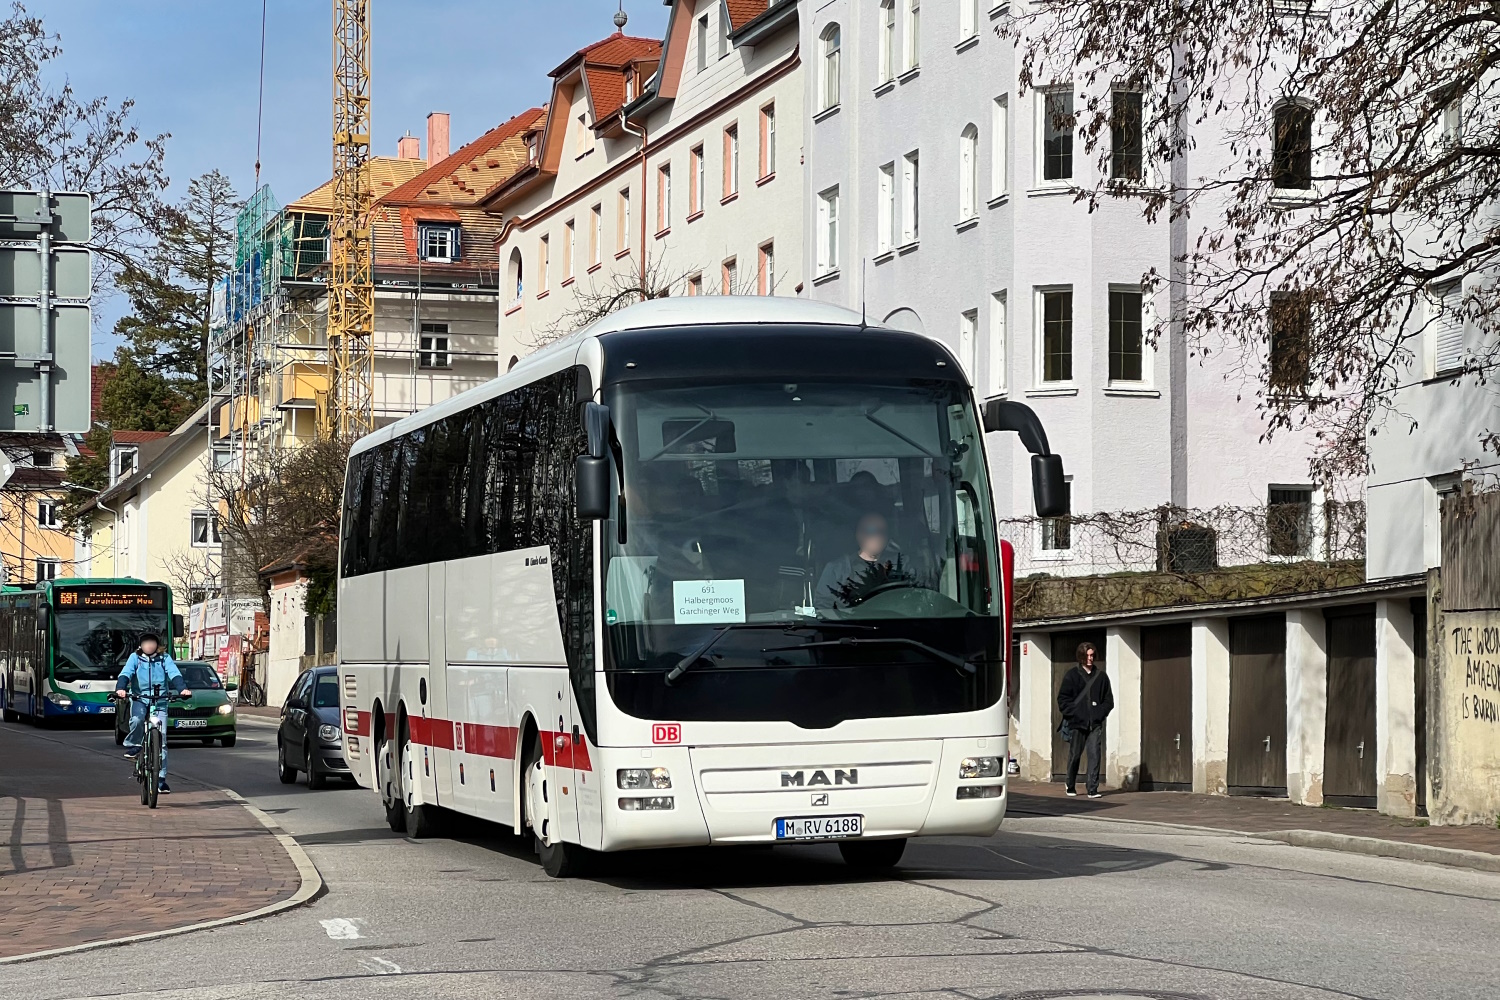 Munich, MAN R09 Lion's Coach C RHC444 # M-RV 6188